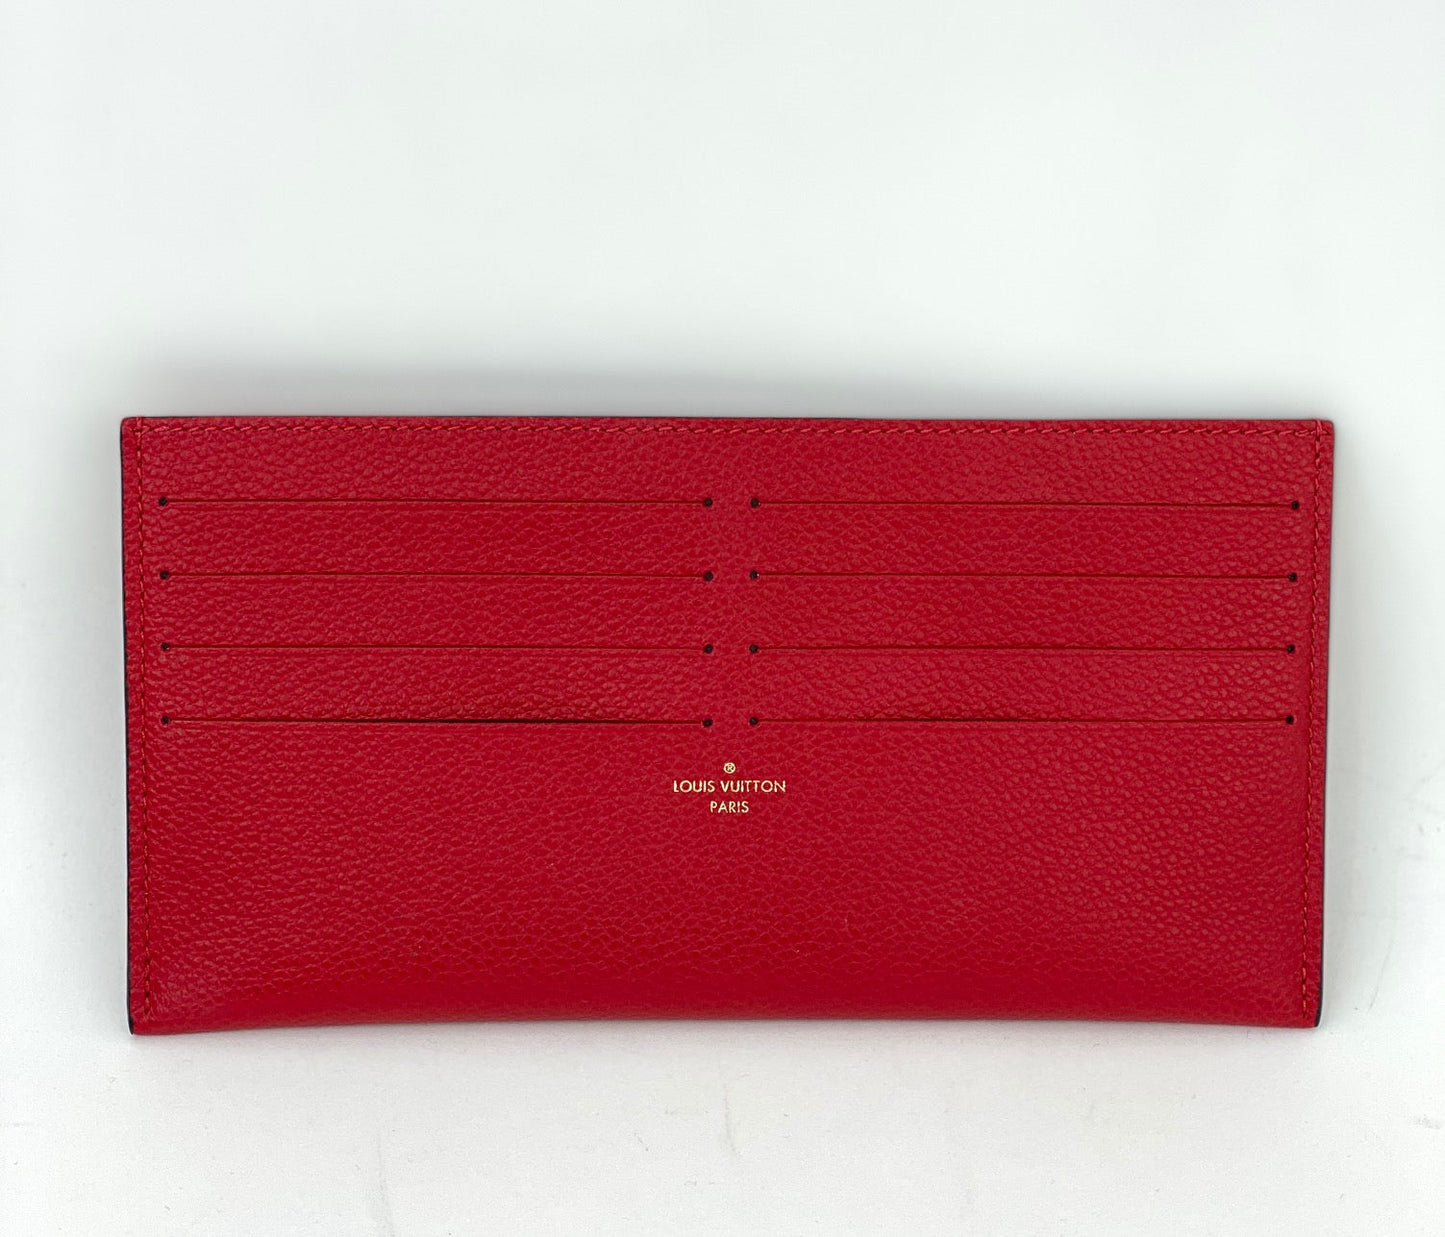 Louis Vuitton Vernis Pochette Felicie Card Holder Wallet Insert